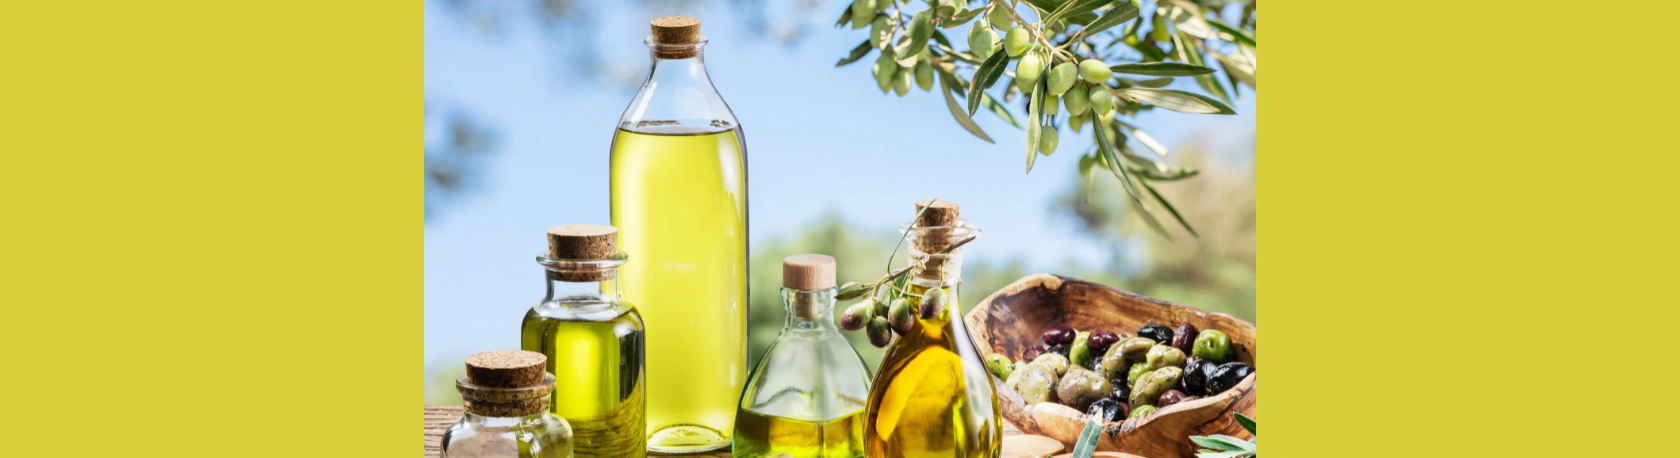 ¿Sabías que España es el productor más grande de aceite de oliva en el mundo? - Easy Español